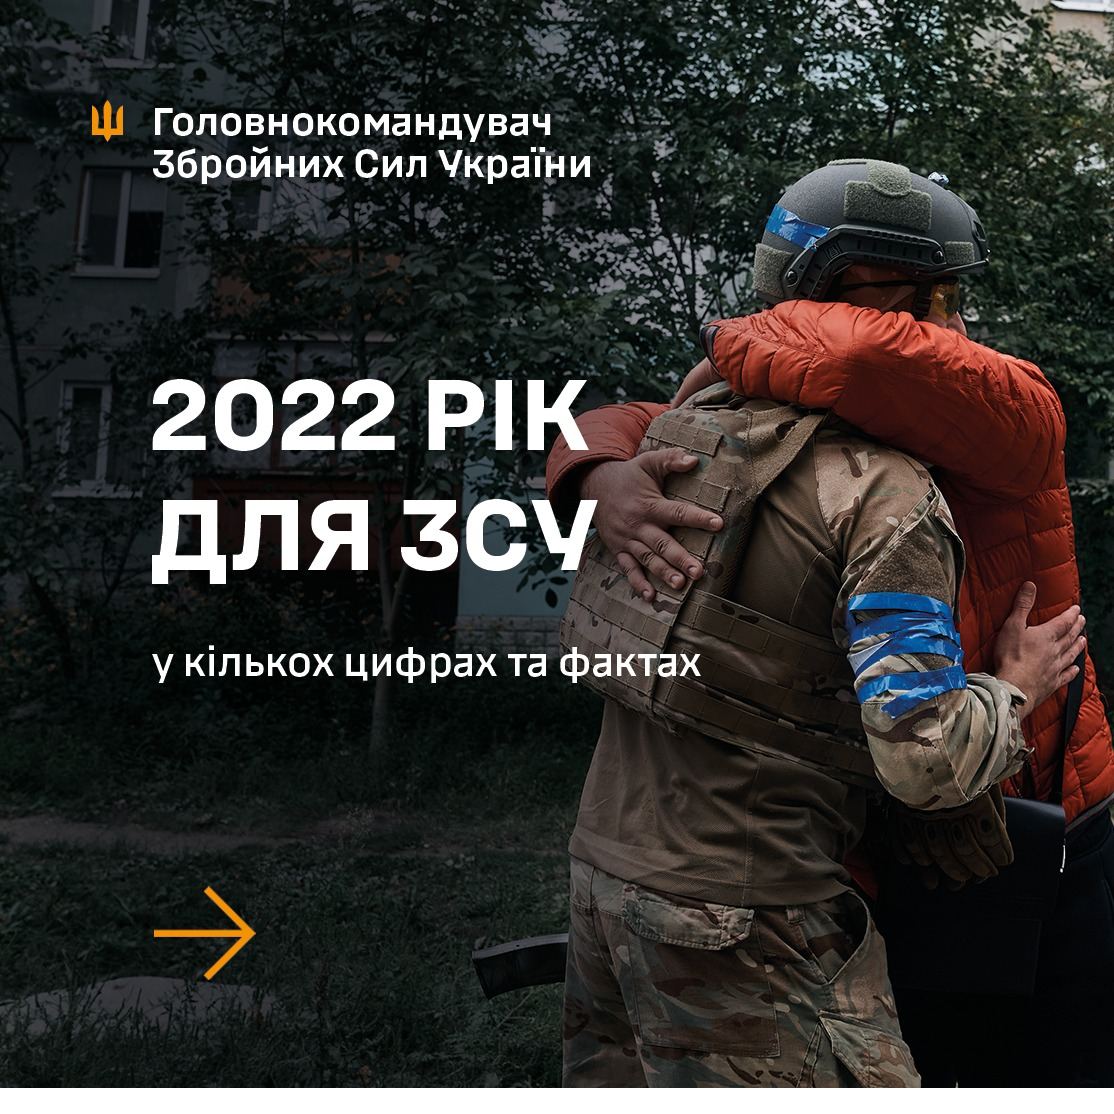 Итоги 2022 года для ВСУ от главнокомандующего Вооруженными Силами Валерия Залужного в нескольких фактах: